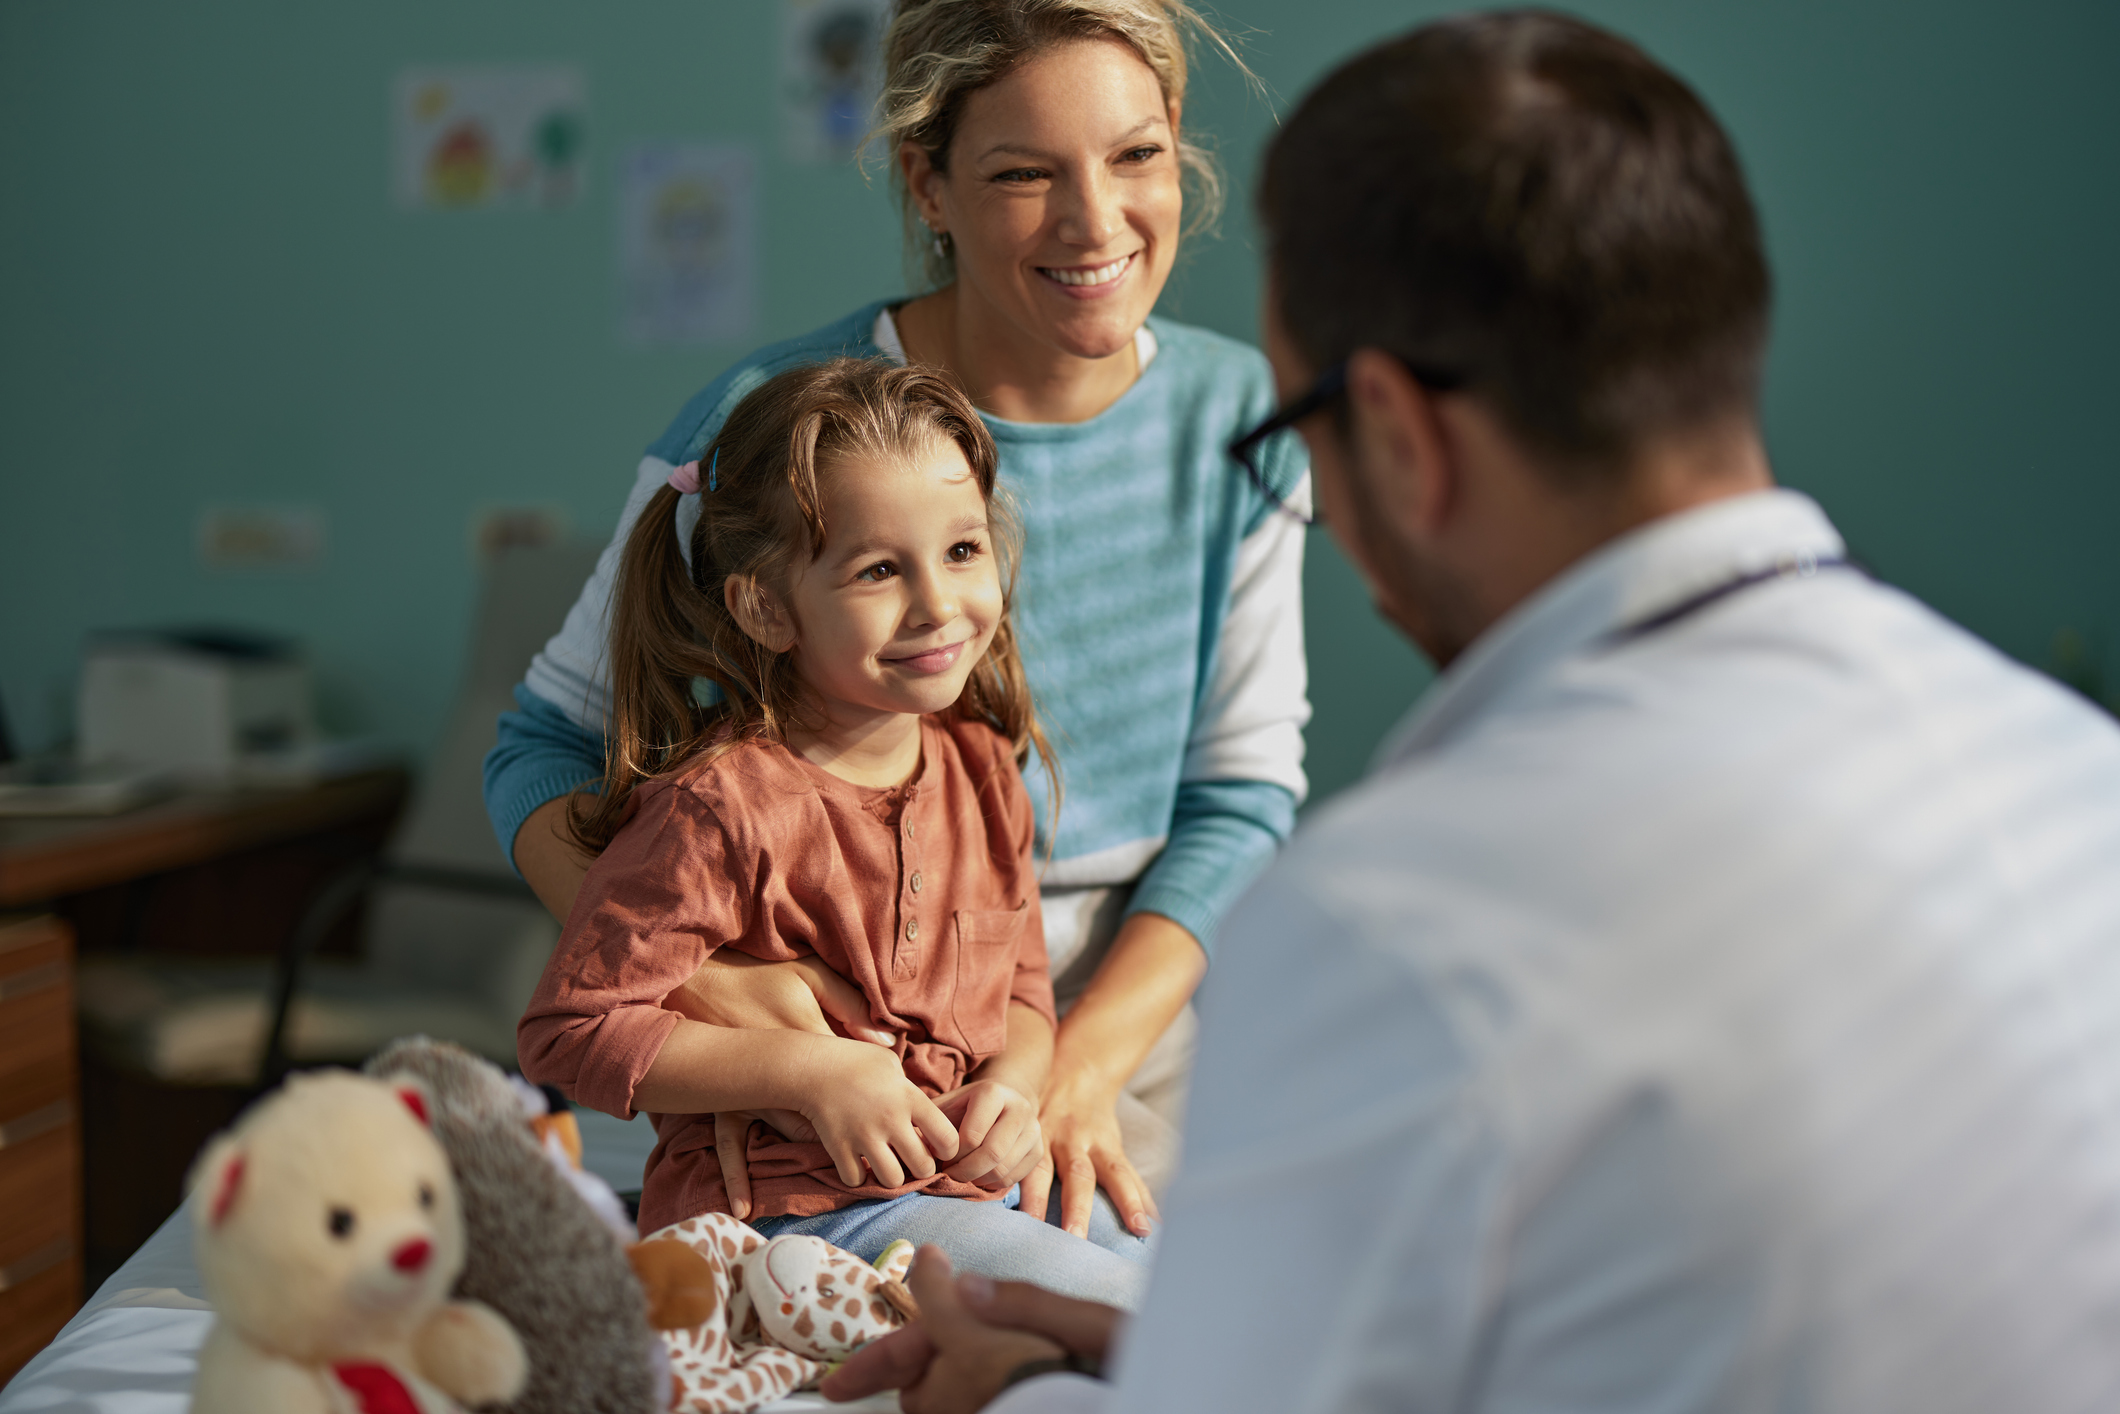 Σε ποια ηλικία γίνεται η σωστή διάγνωση του παιδικού διαβήτη; Ο παιδίατρος του Tlife, Δρ. Σπύρος Μαζάνης, απαντάει στις δικές σας ερωτήσεις